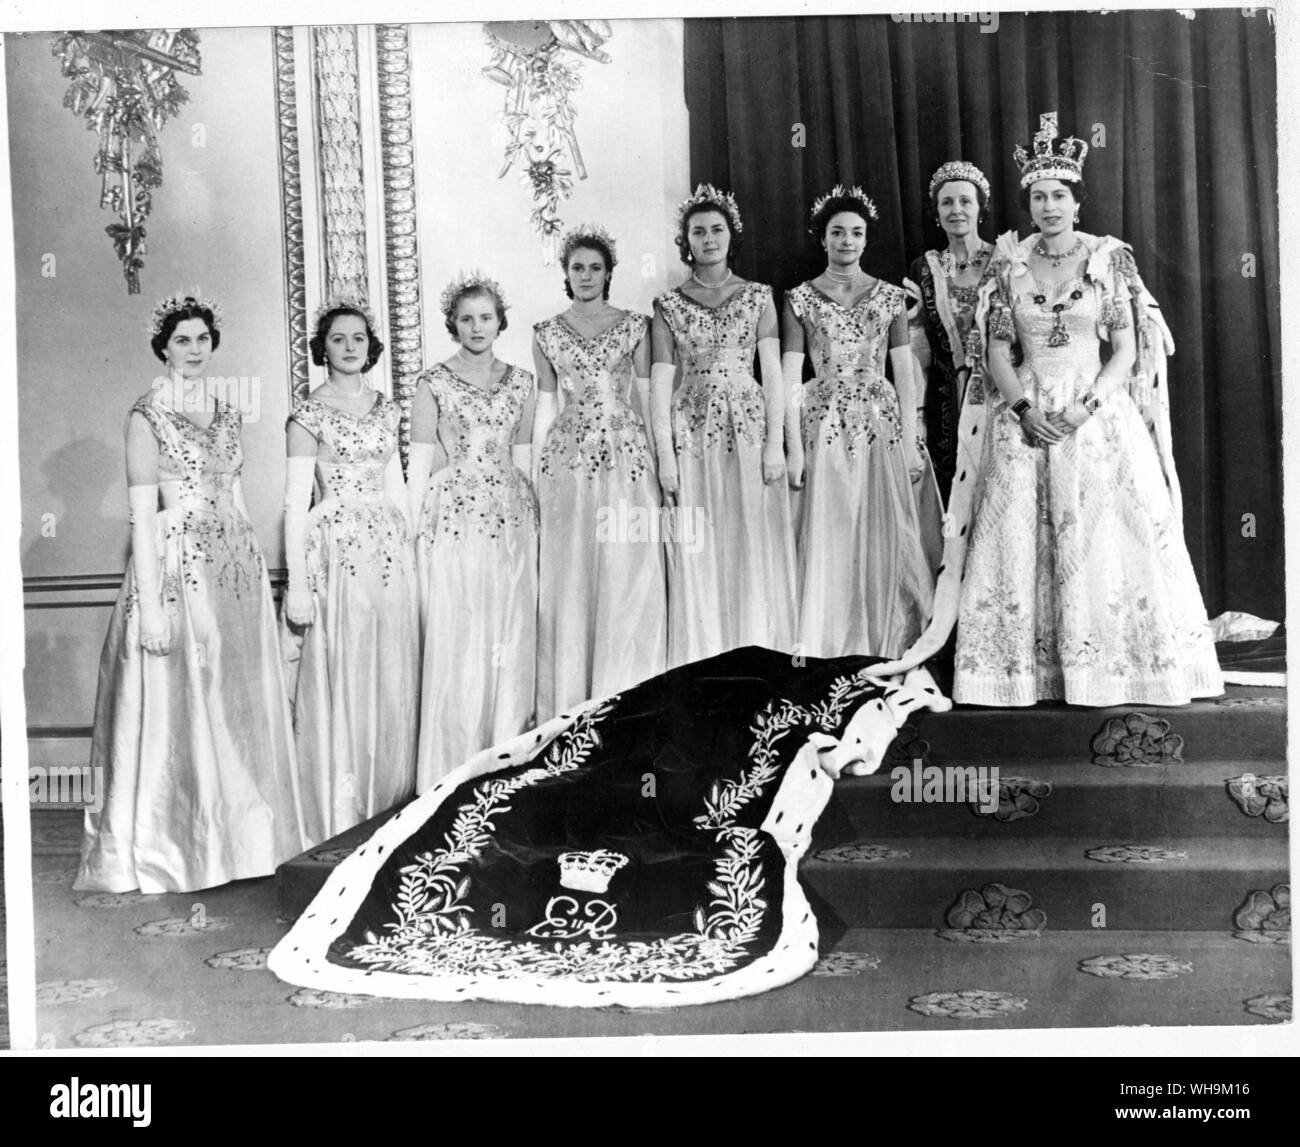 2 giugno 1953: Il neo incoronata Regina Elisabetta II con il suo cameriere di onore al palazzo dopo l'incoronazione. Foto Stock